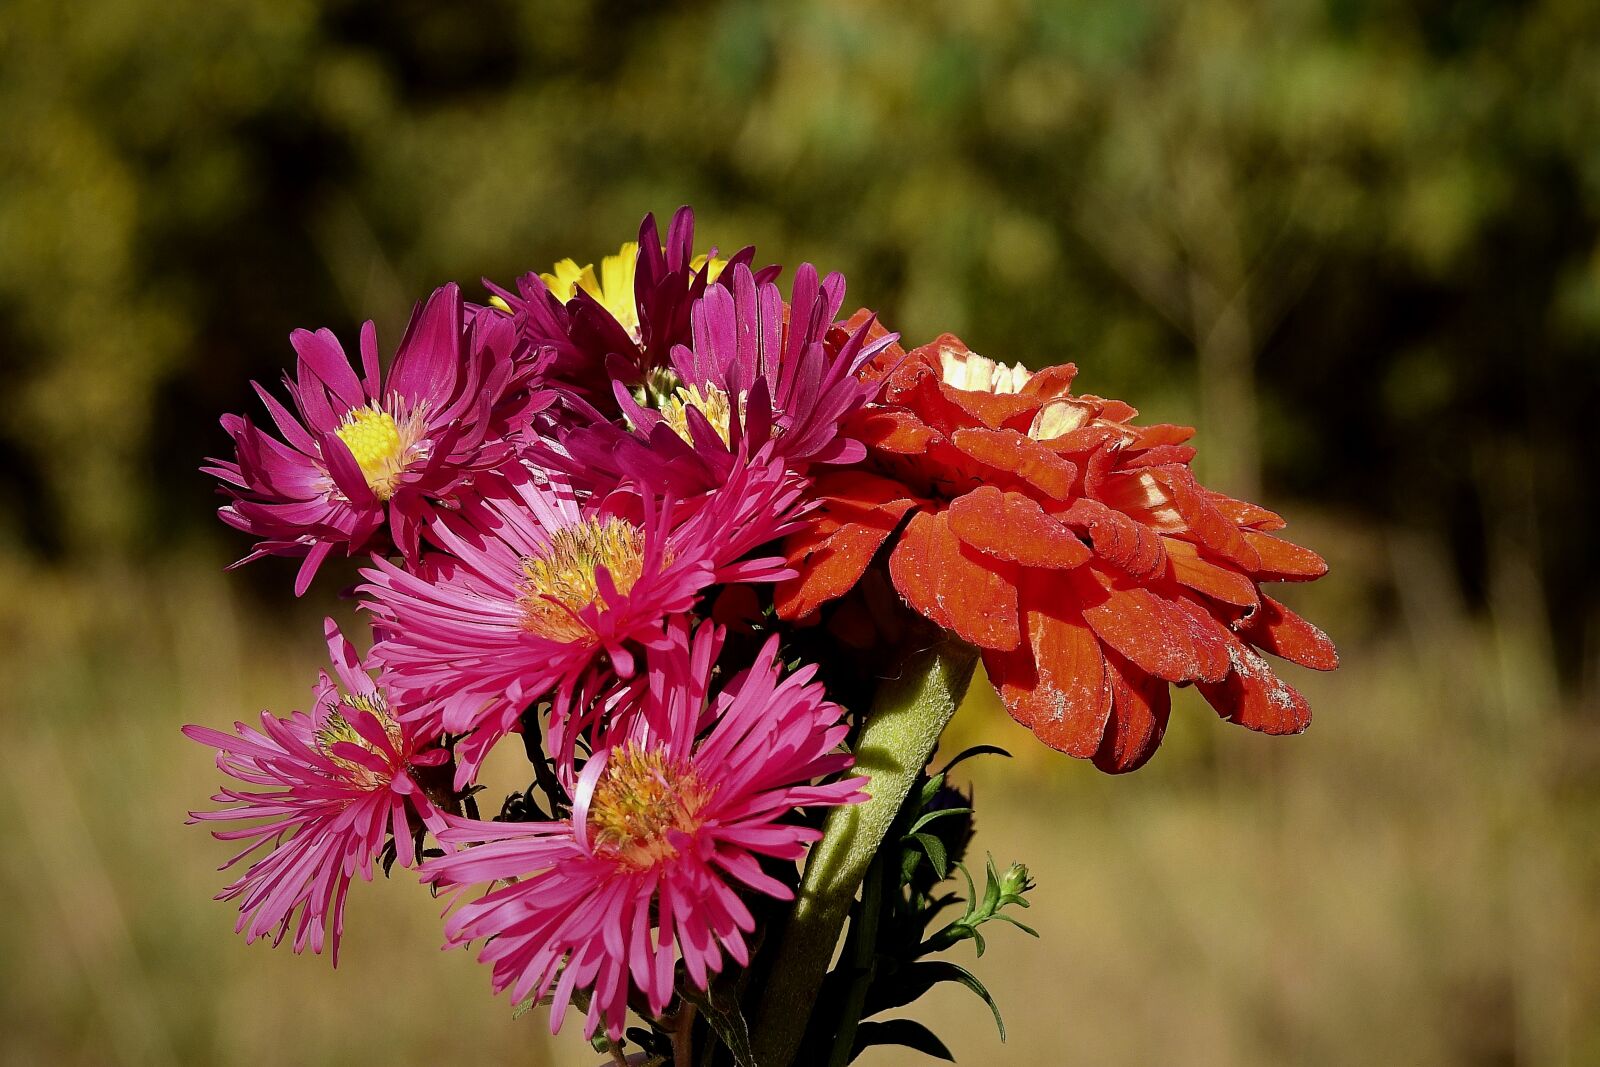 Nikon Coolpix P900 sample photo. Flowers, bouquet, colorful photography